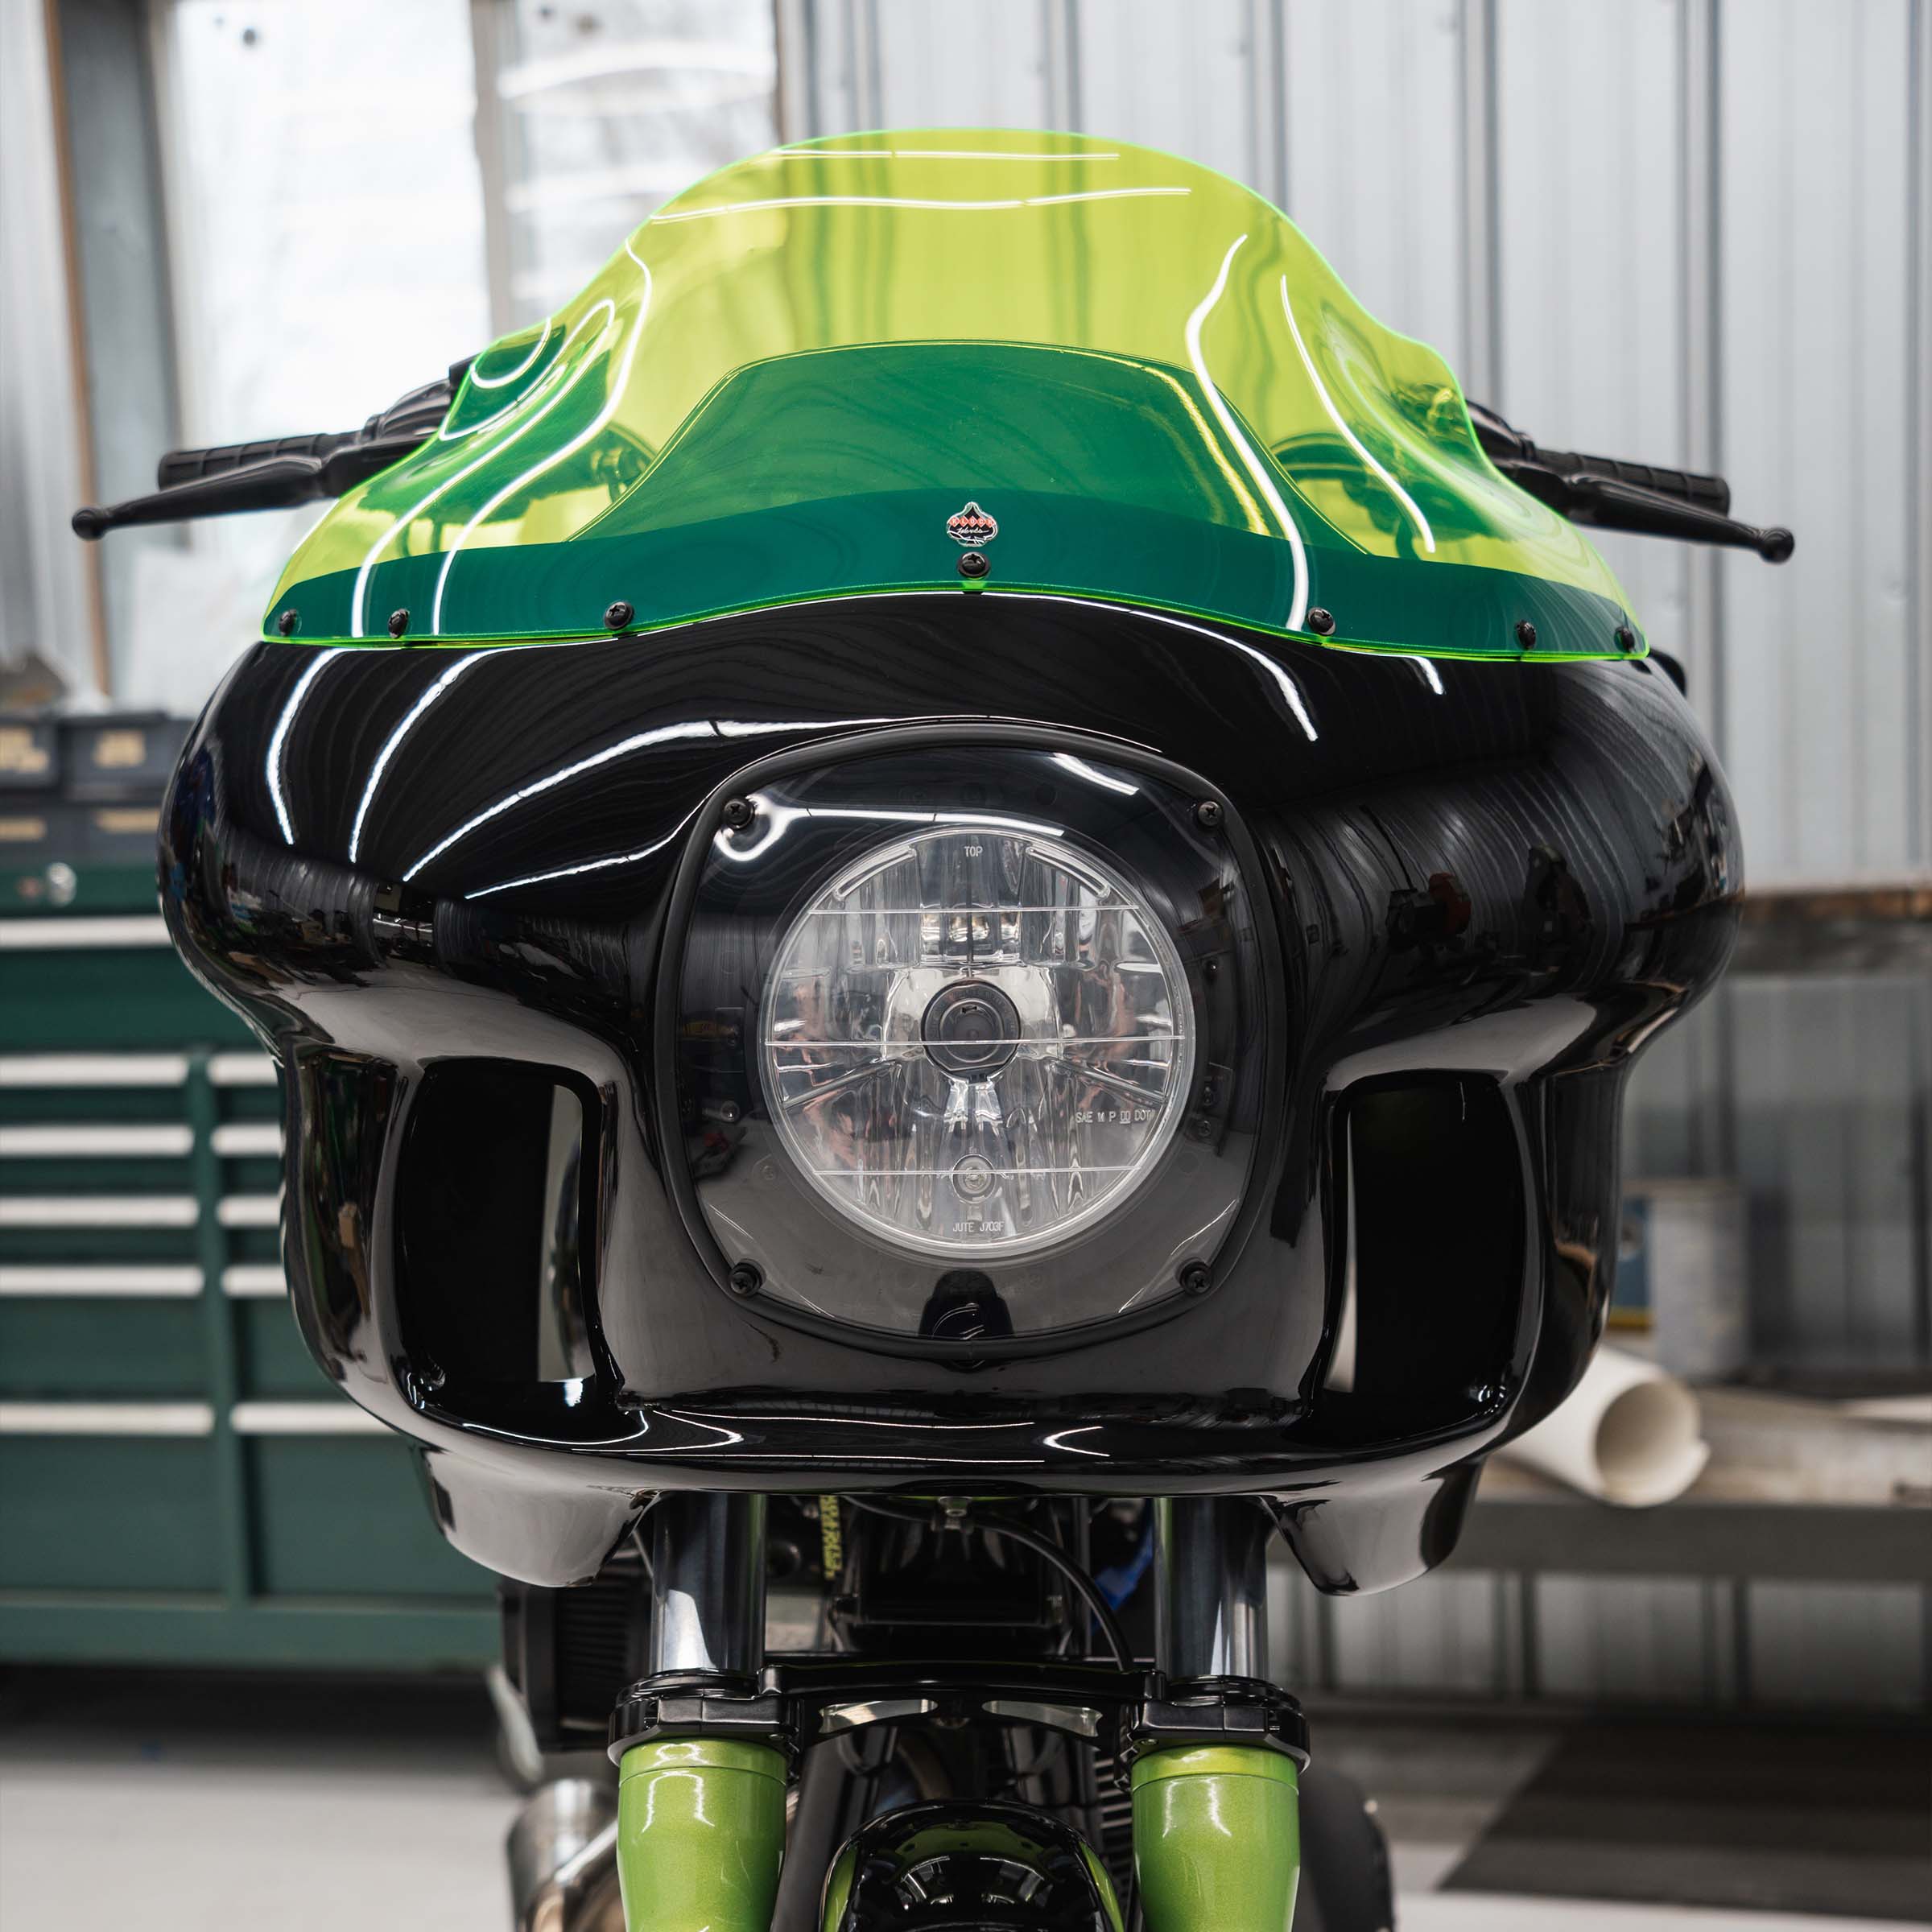 Fairing Headlight Cover for FXRP/FXRT/FXRD Motorcycles